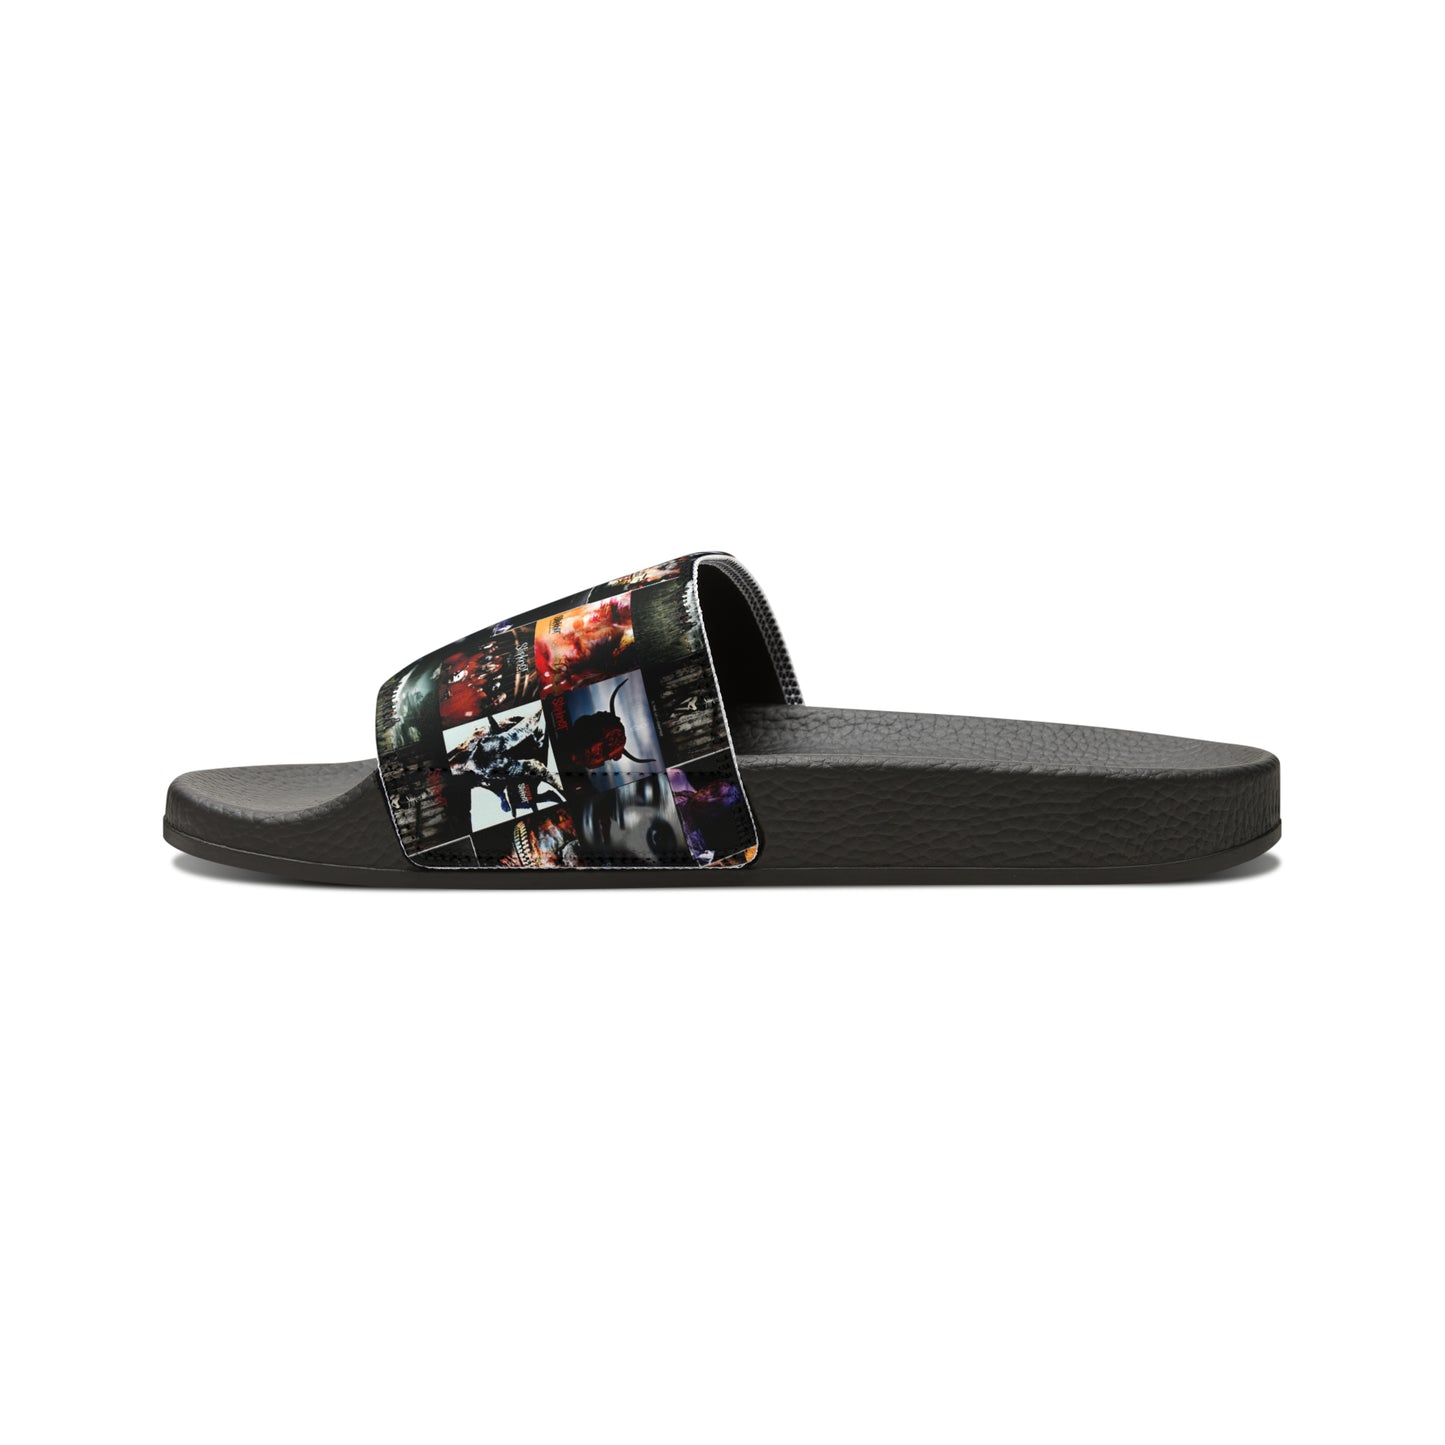 Slipknot Album Art Collage Men's Slide Sandals